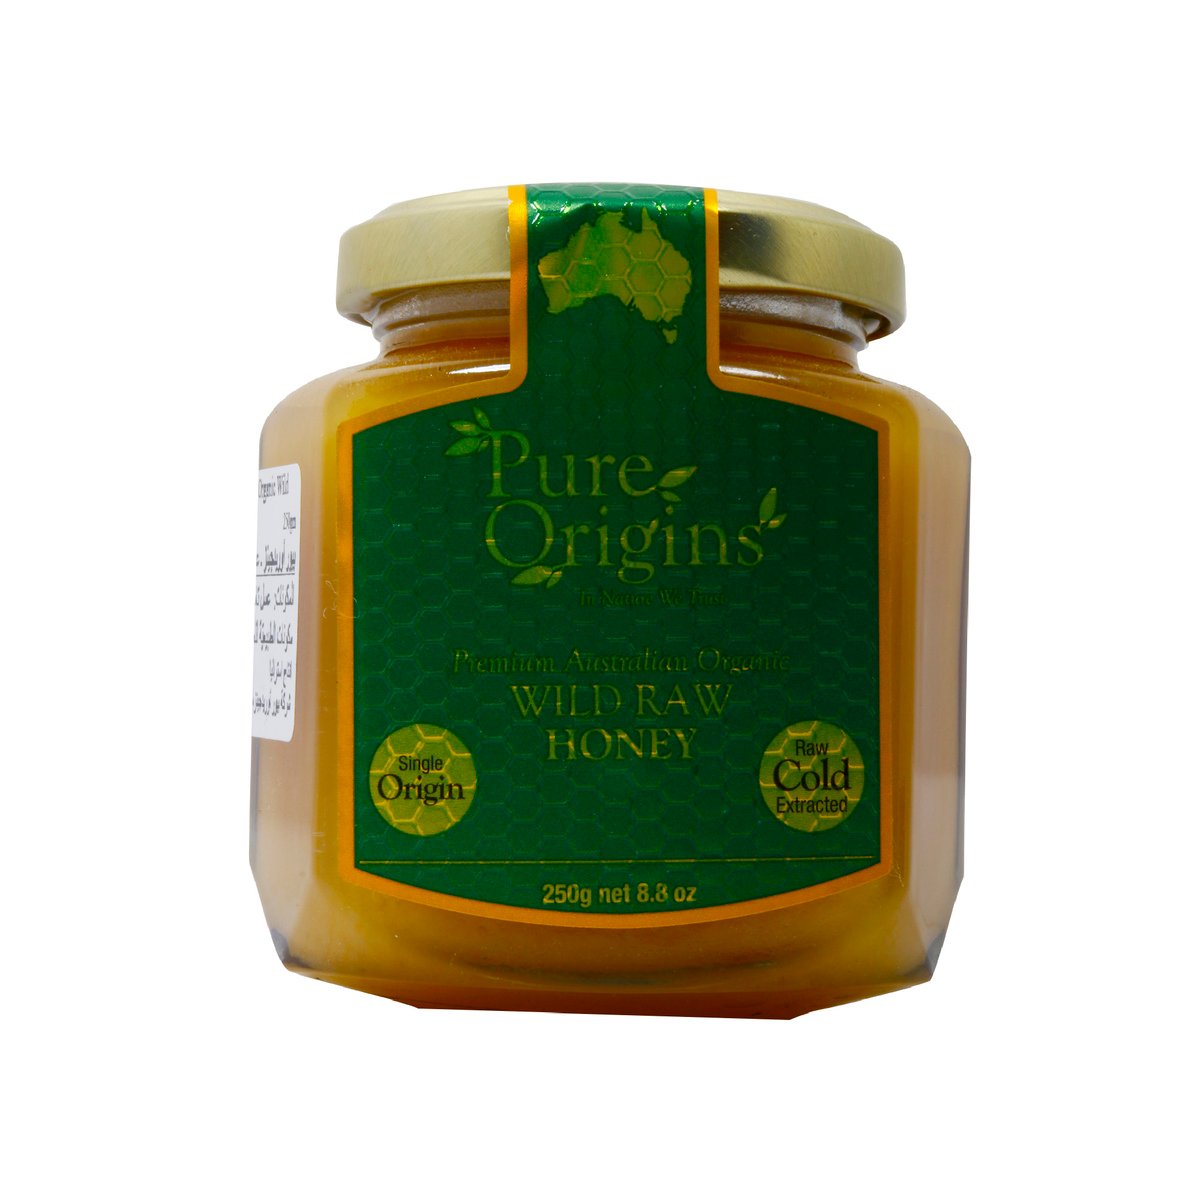 Pure Origins Australian Wild Raw Honey 250g